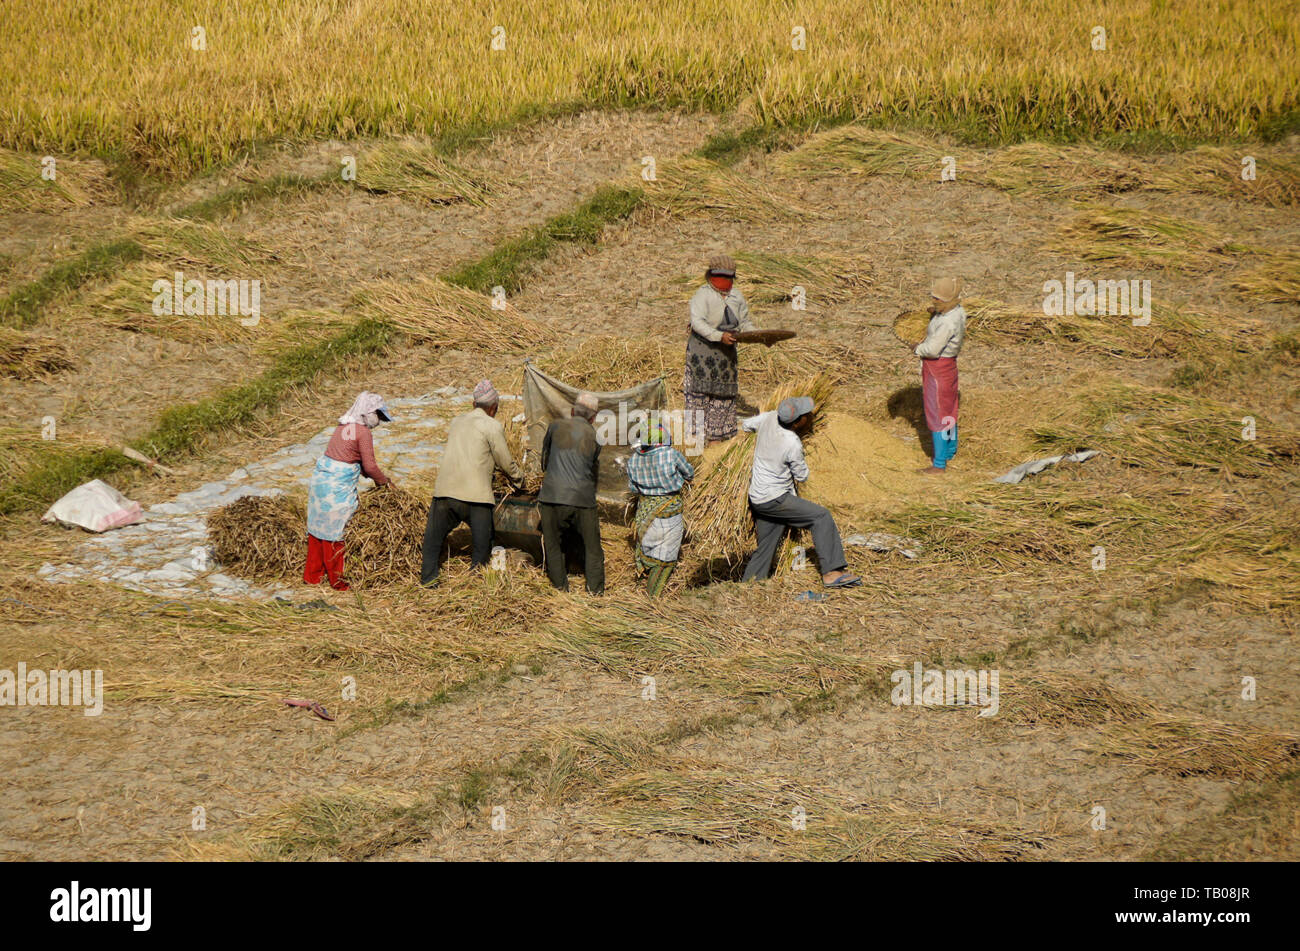 Die Landwirte Dreschen und Worfeln geerntet Reis im Tal von Katmandu, Nepal Stockfoto